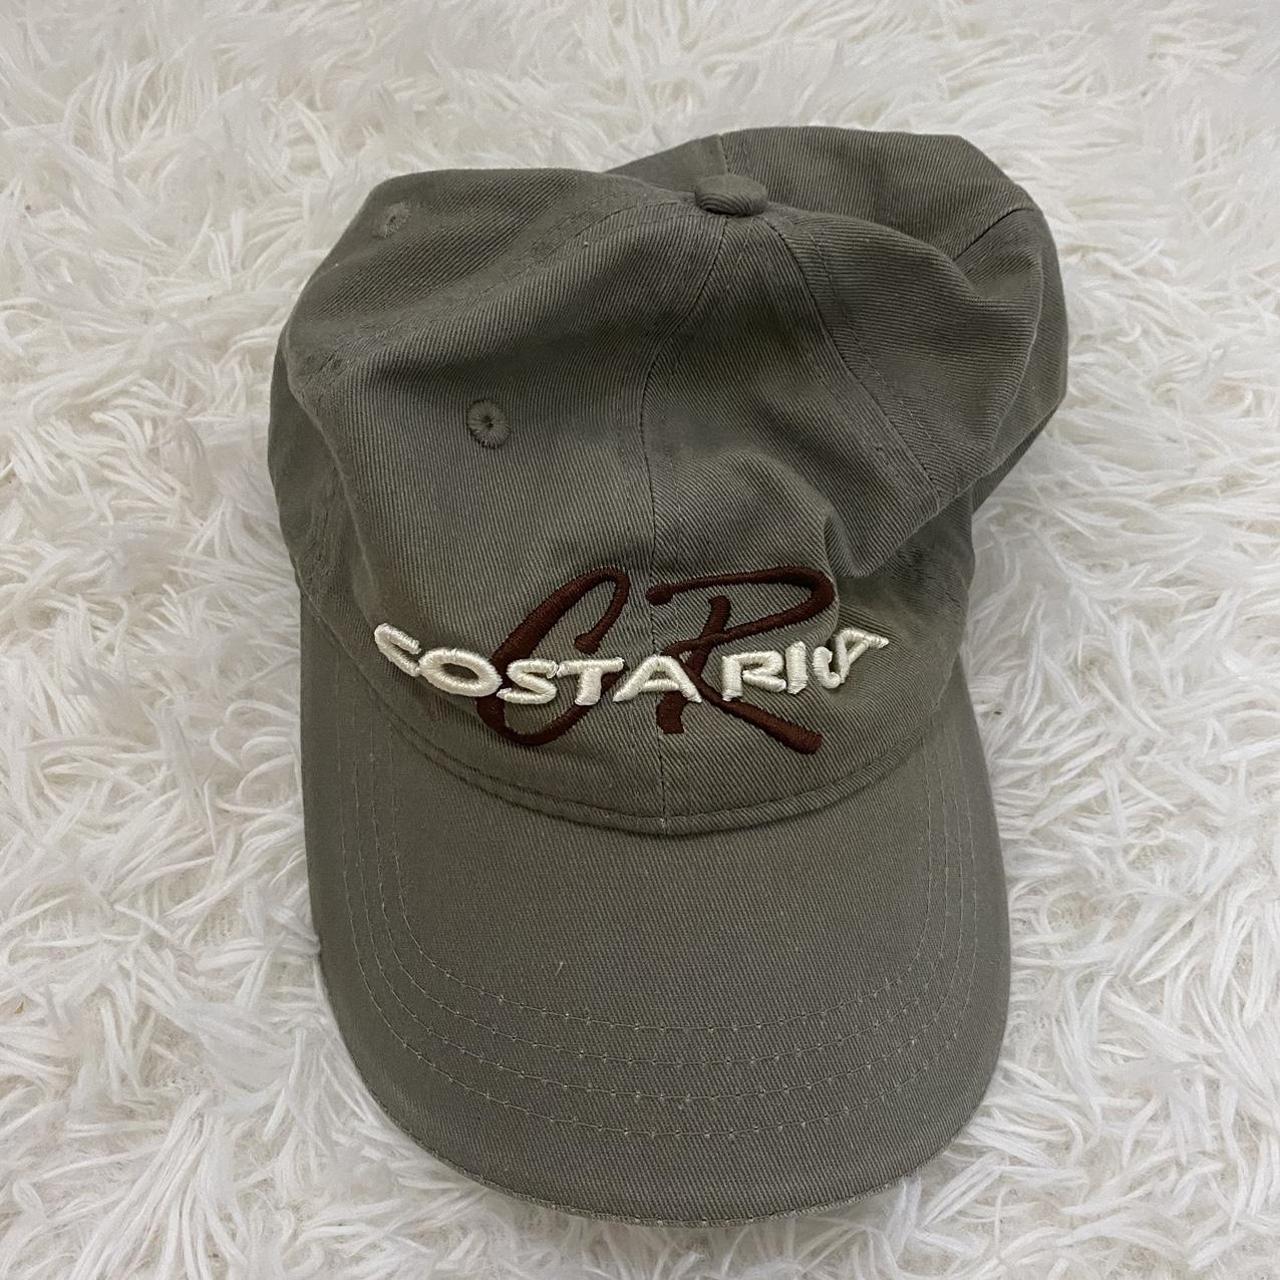 Costa Rica Vintage Cap • minor flaw in photo #y2k - Depop